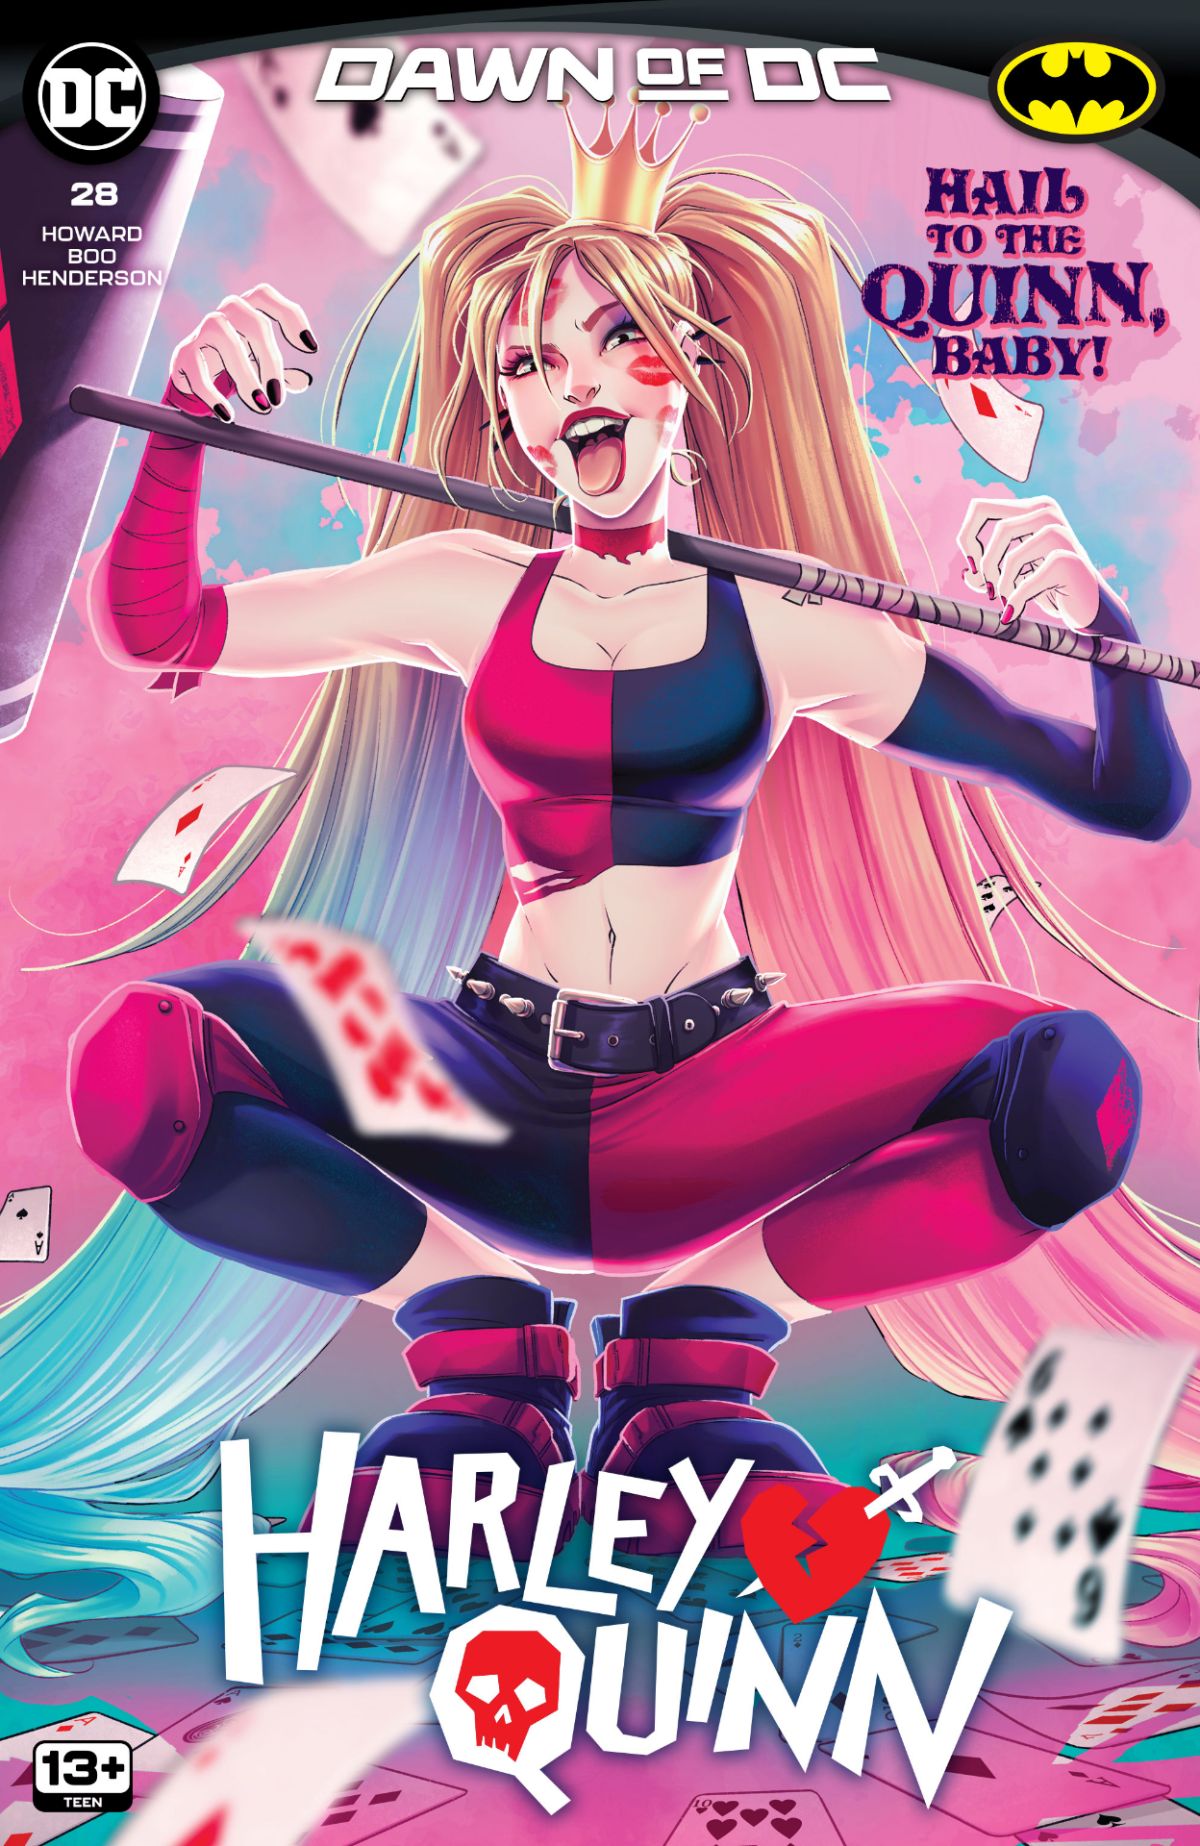 Cover art for Harley Quinn #28